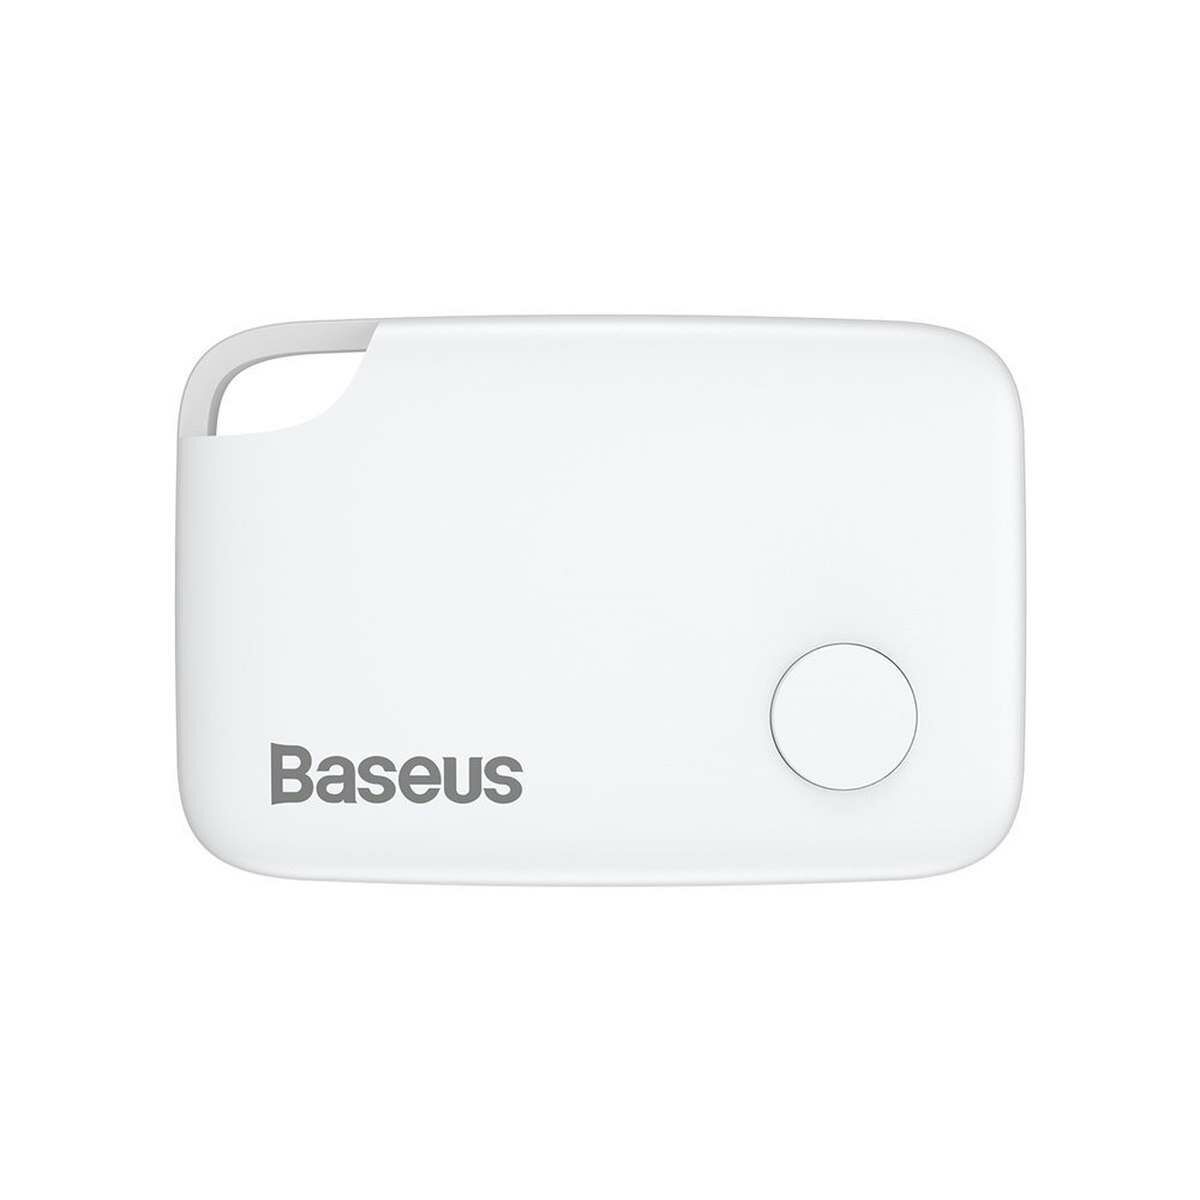 Kép 12/13 - Baseus otthon, Intelligens T2 mini kulcstartó, elveszett eszközök/kulcsok megtalálásához eszköz és detektor, fehér (ZLFDQT2-02)